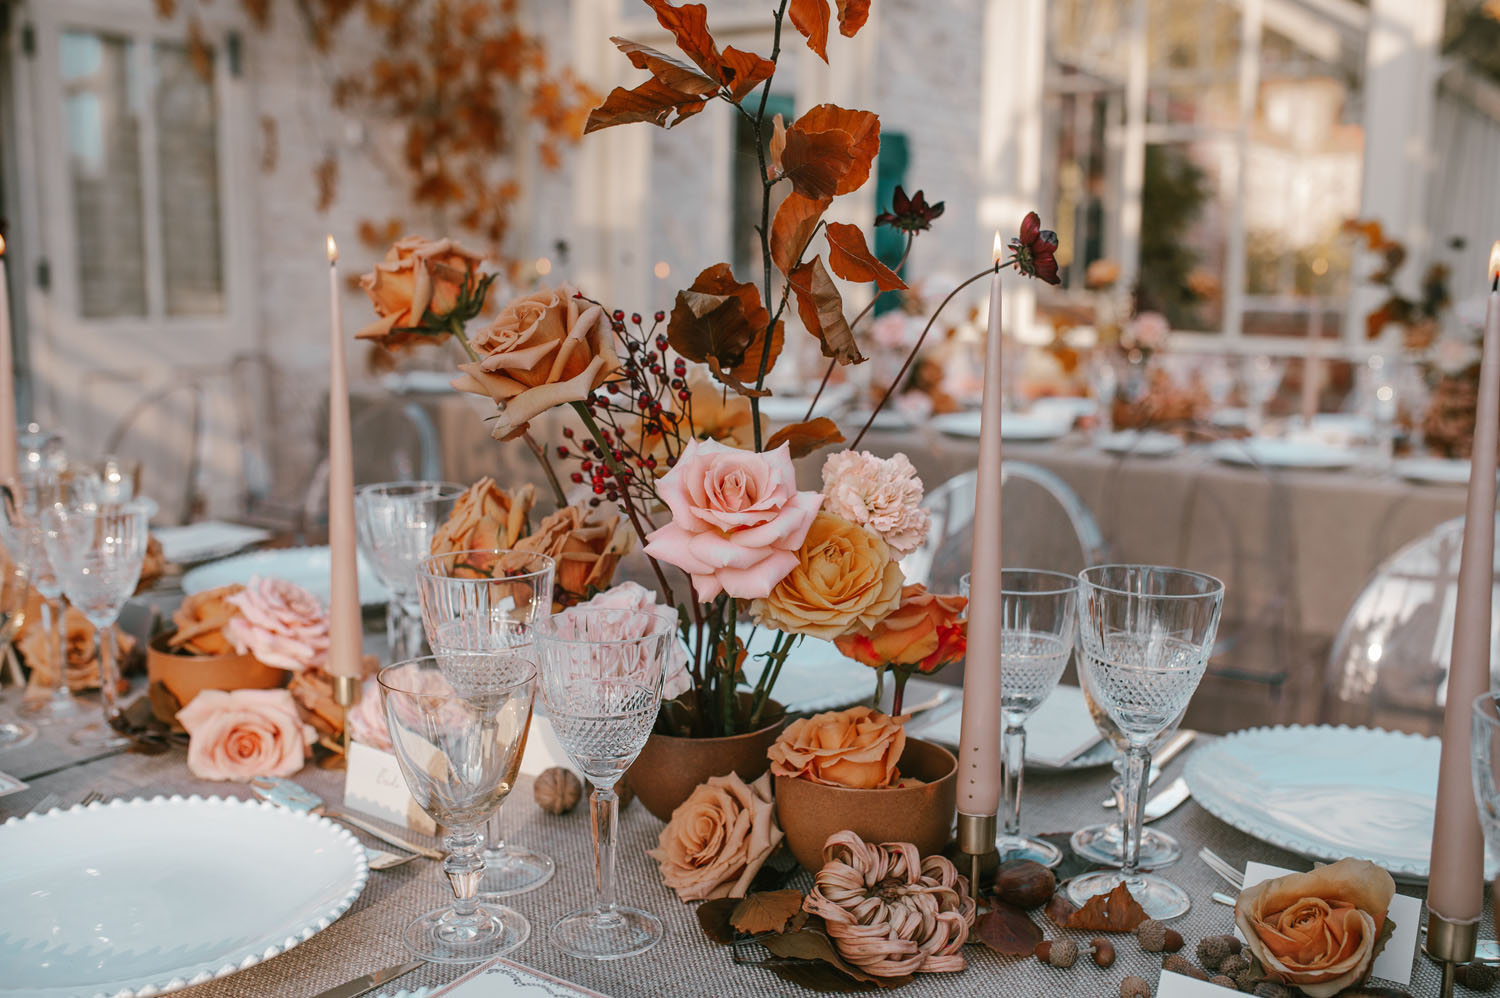 Autumn Glasshouse Wedding Inspiration